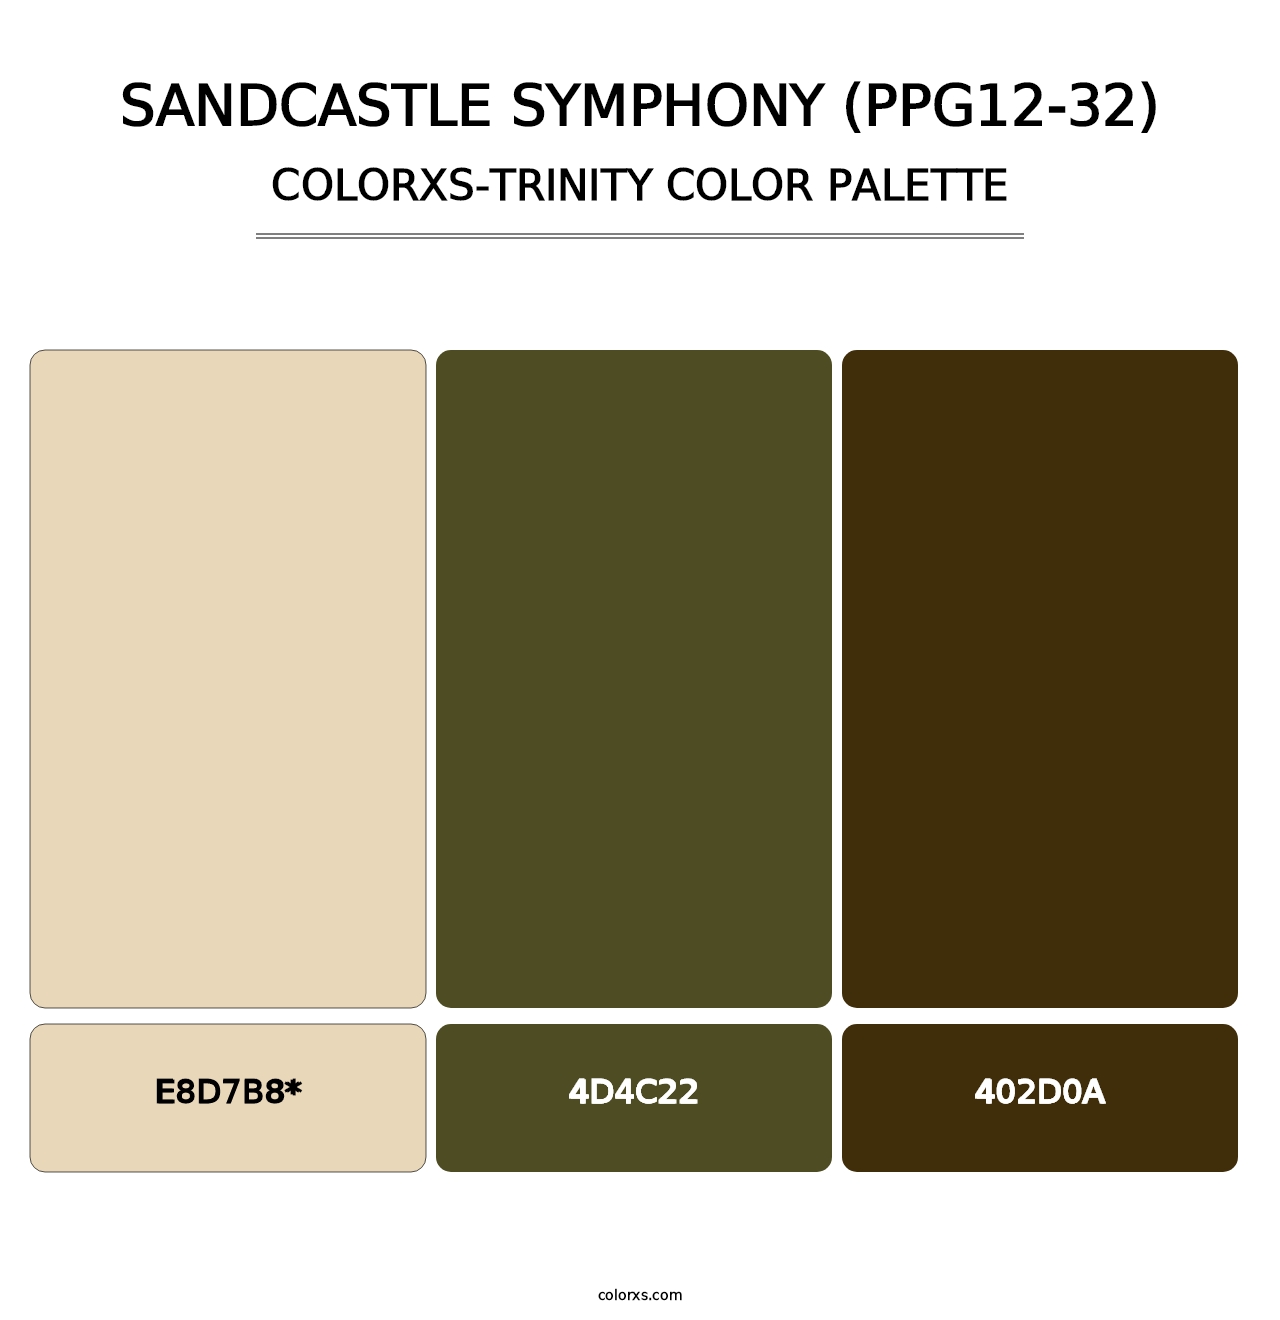 Sandcastle Symphony (PPG12-32) - Colorxs Trinity Palette